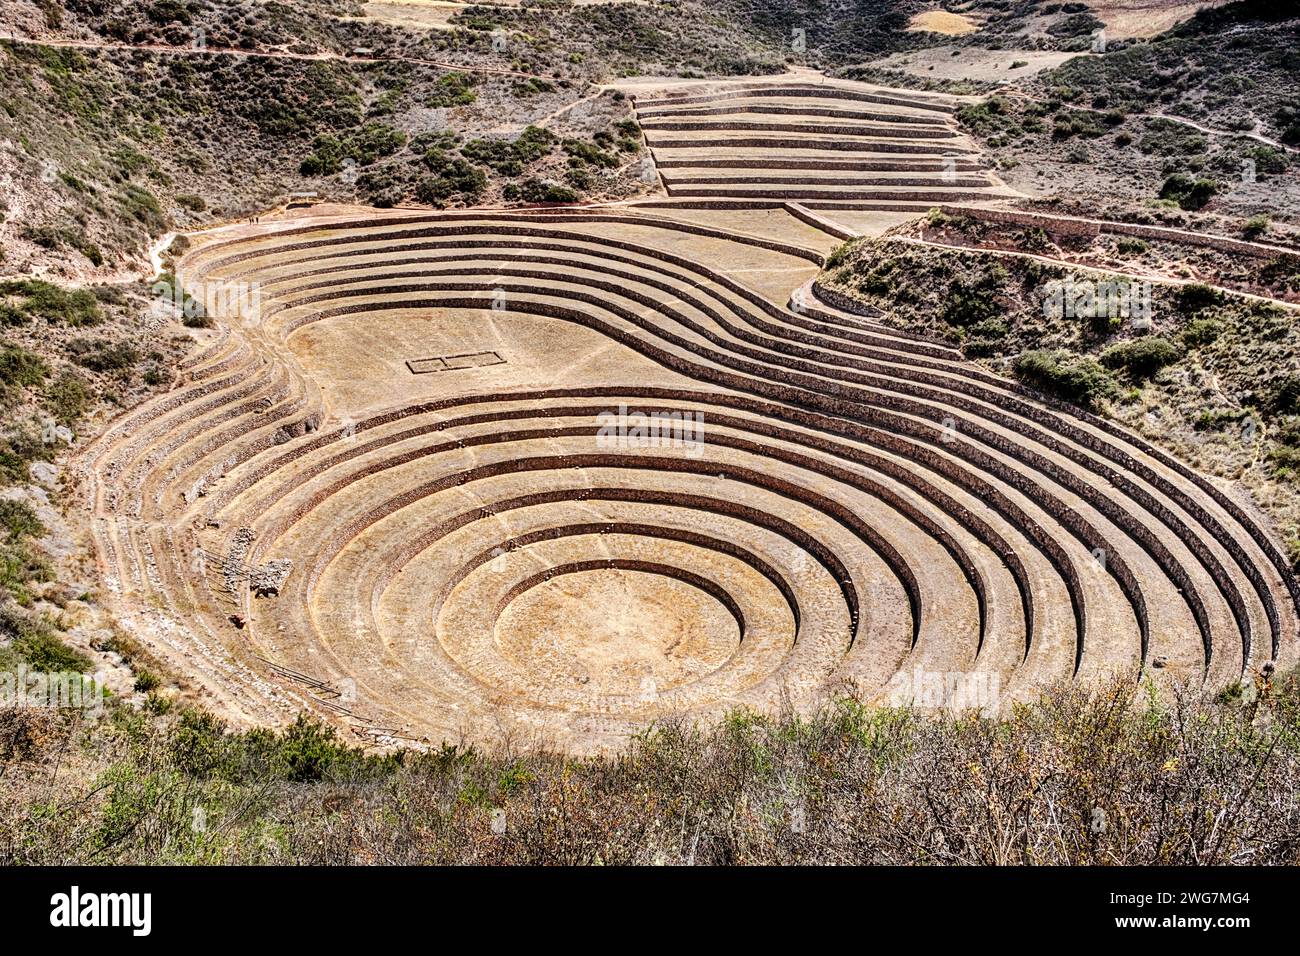 Les parois rocheuses concentriques de ce site historique de Moray sont considérées comme une ancienne ferme expérimentale inca. Banque D'Images